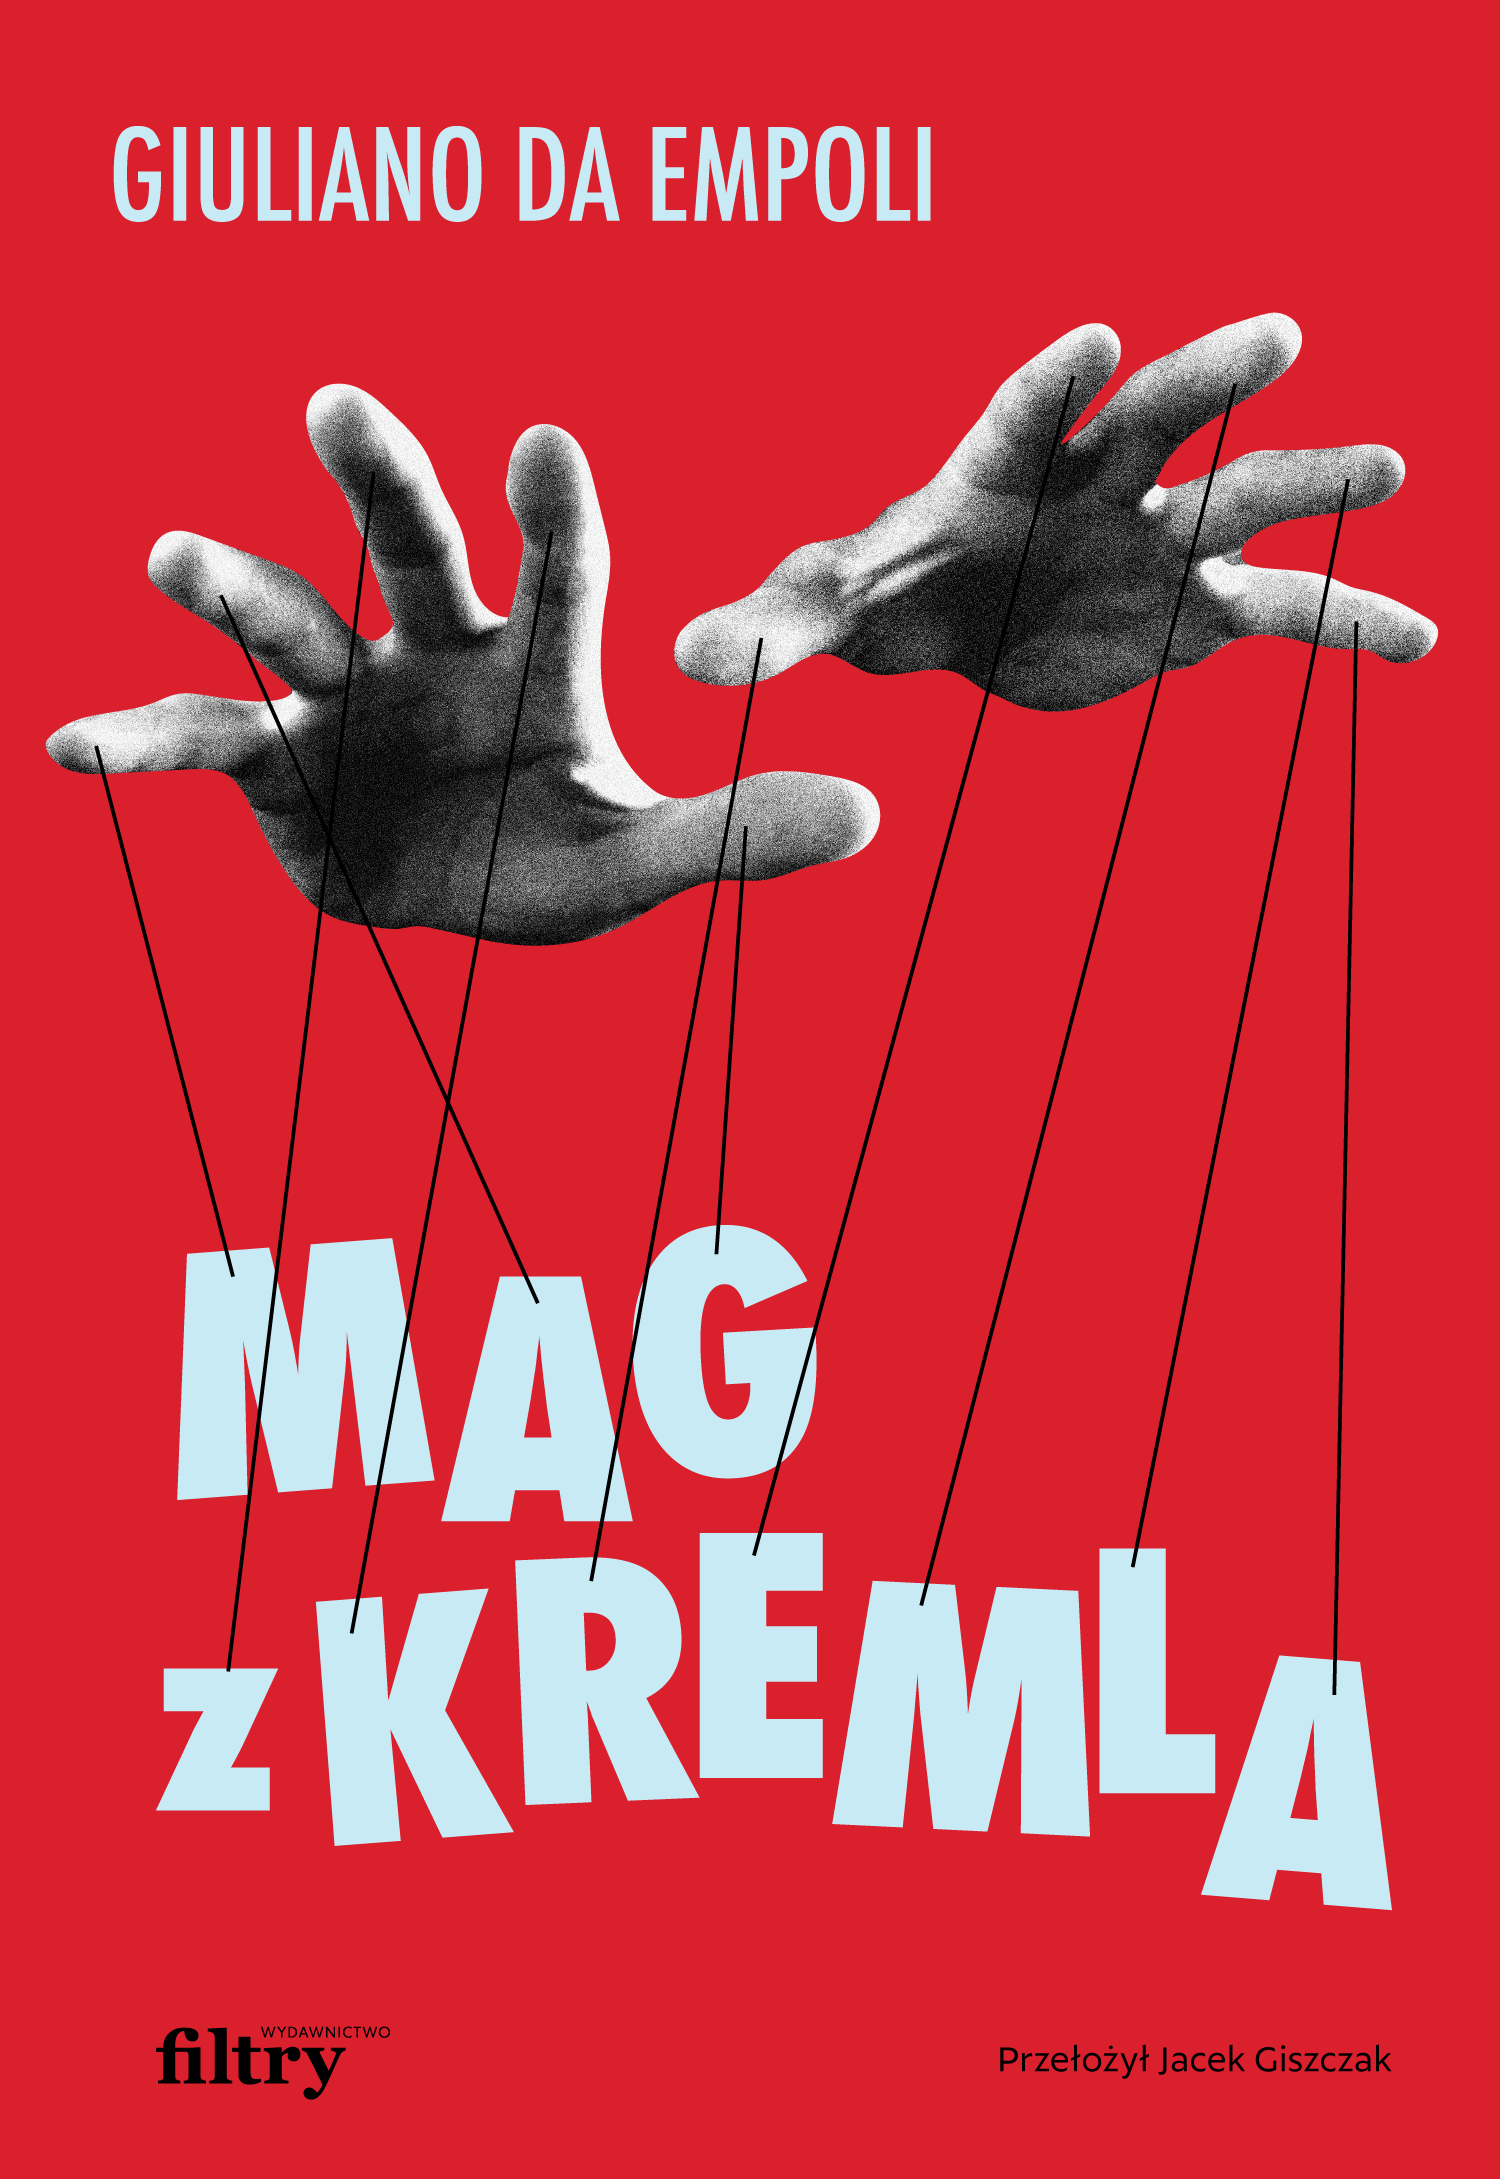 Giuliano da Empoli, „Mag z Kremla”, przekład z francuskiego Jacek Giszczak, Wydawnictwo Filtry